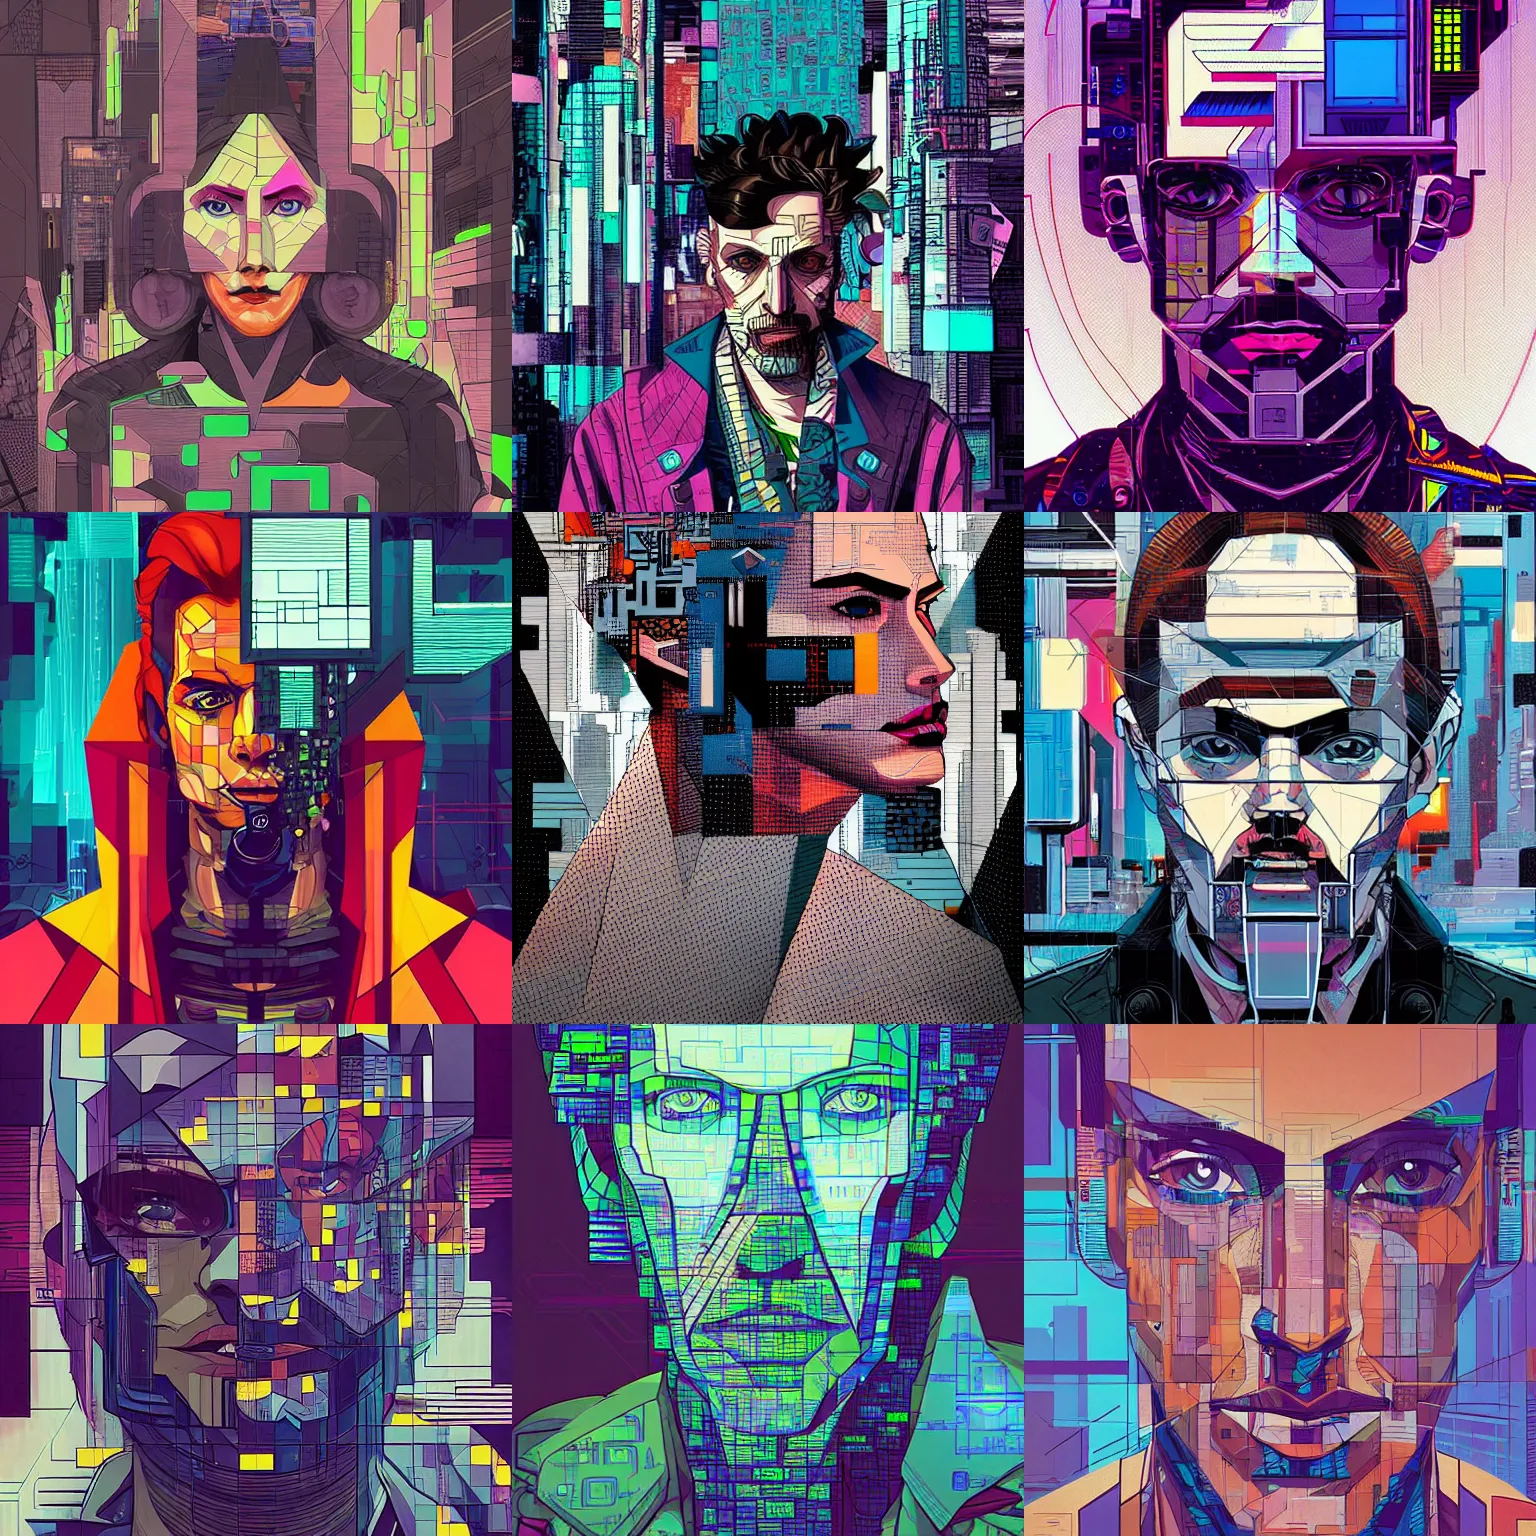 Prompt: a cubist cyberpunk portrait by josan gonzalez.